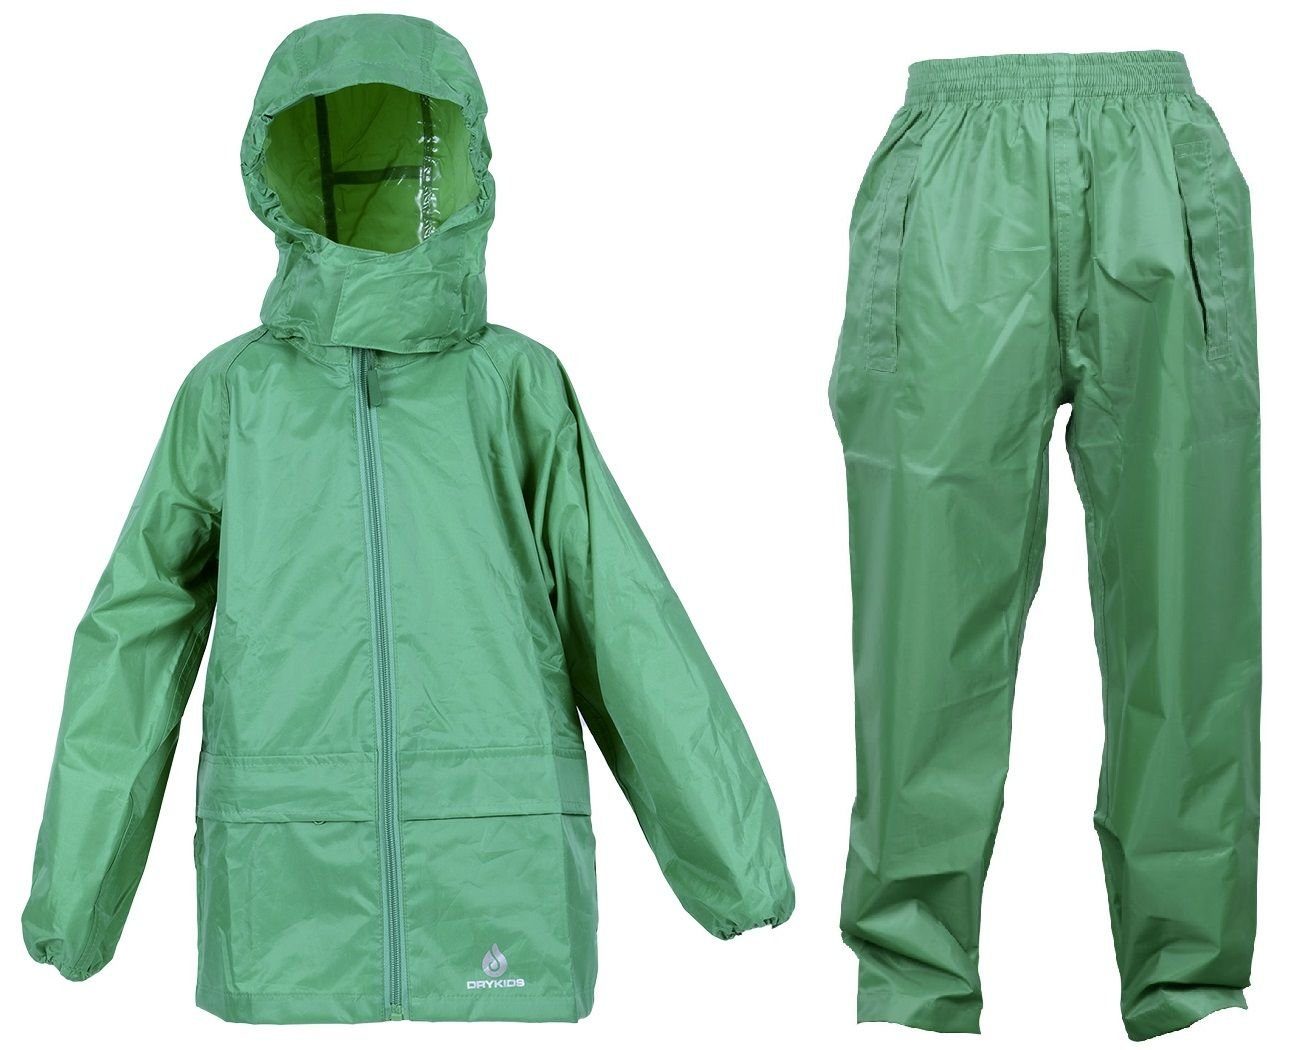 DRY KIDS Regenanzug (1-tlg), Wasserdichtes Kinder Regenbekleidung Regenanzug-Set, reflektierende Grün